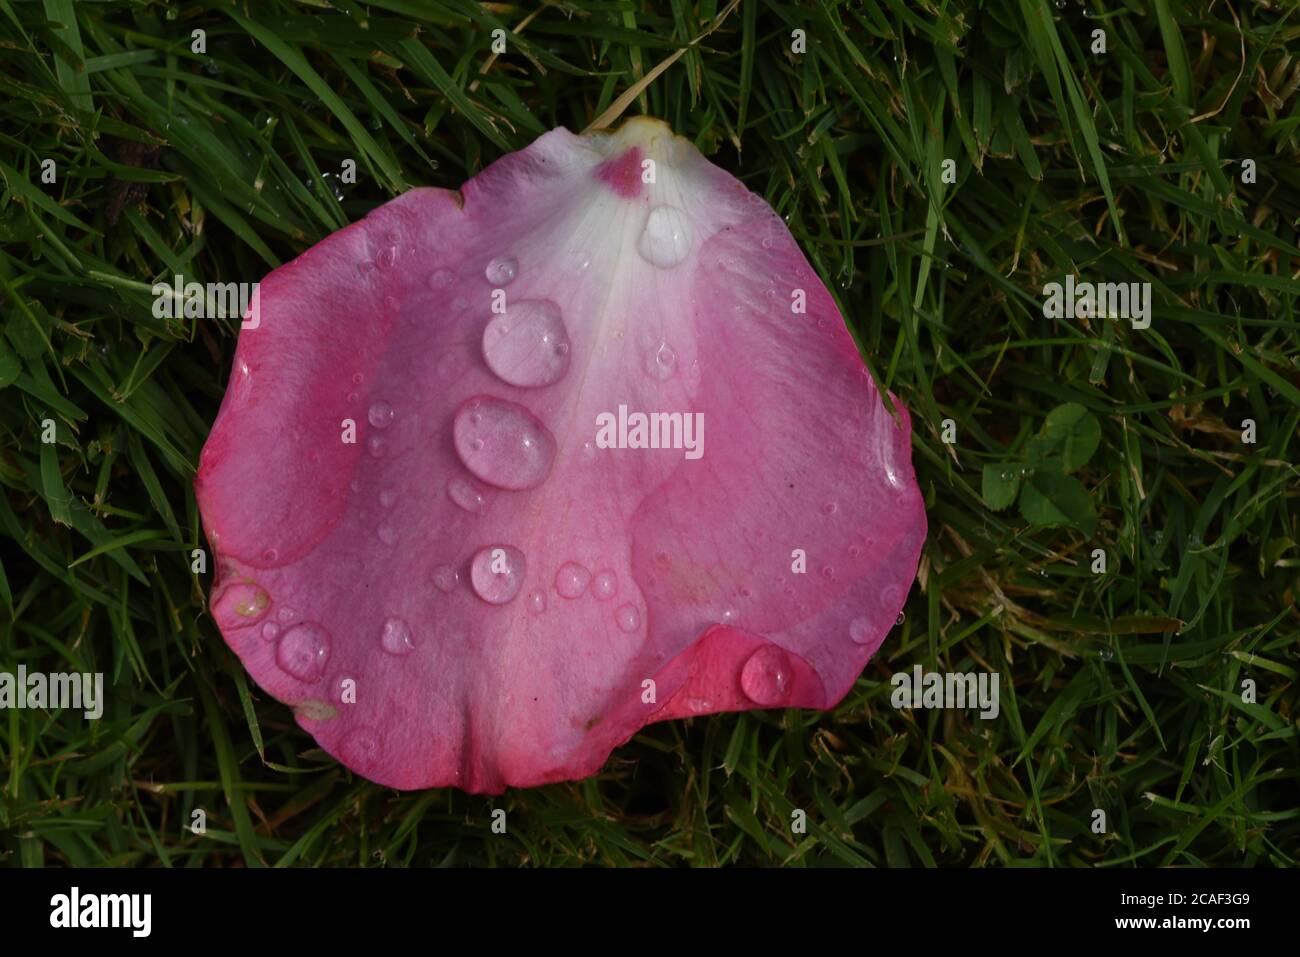 Un unico petalo rosa con gocce d'acqua si trova sull'erba in un giardino sull'isola di Vancouver, British Columbisa, Canada Foto Stock